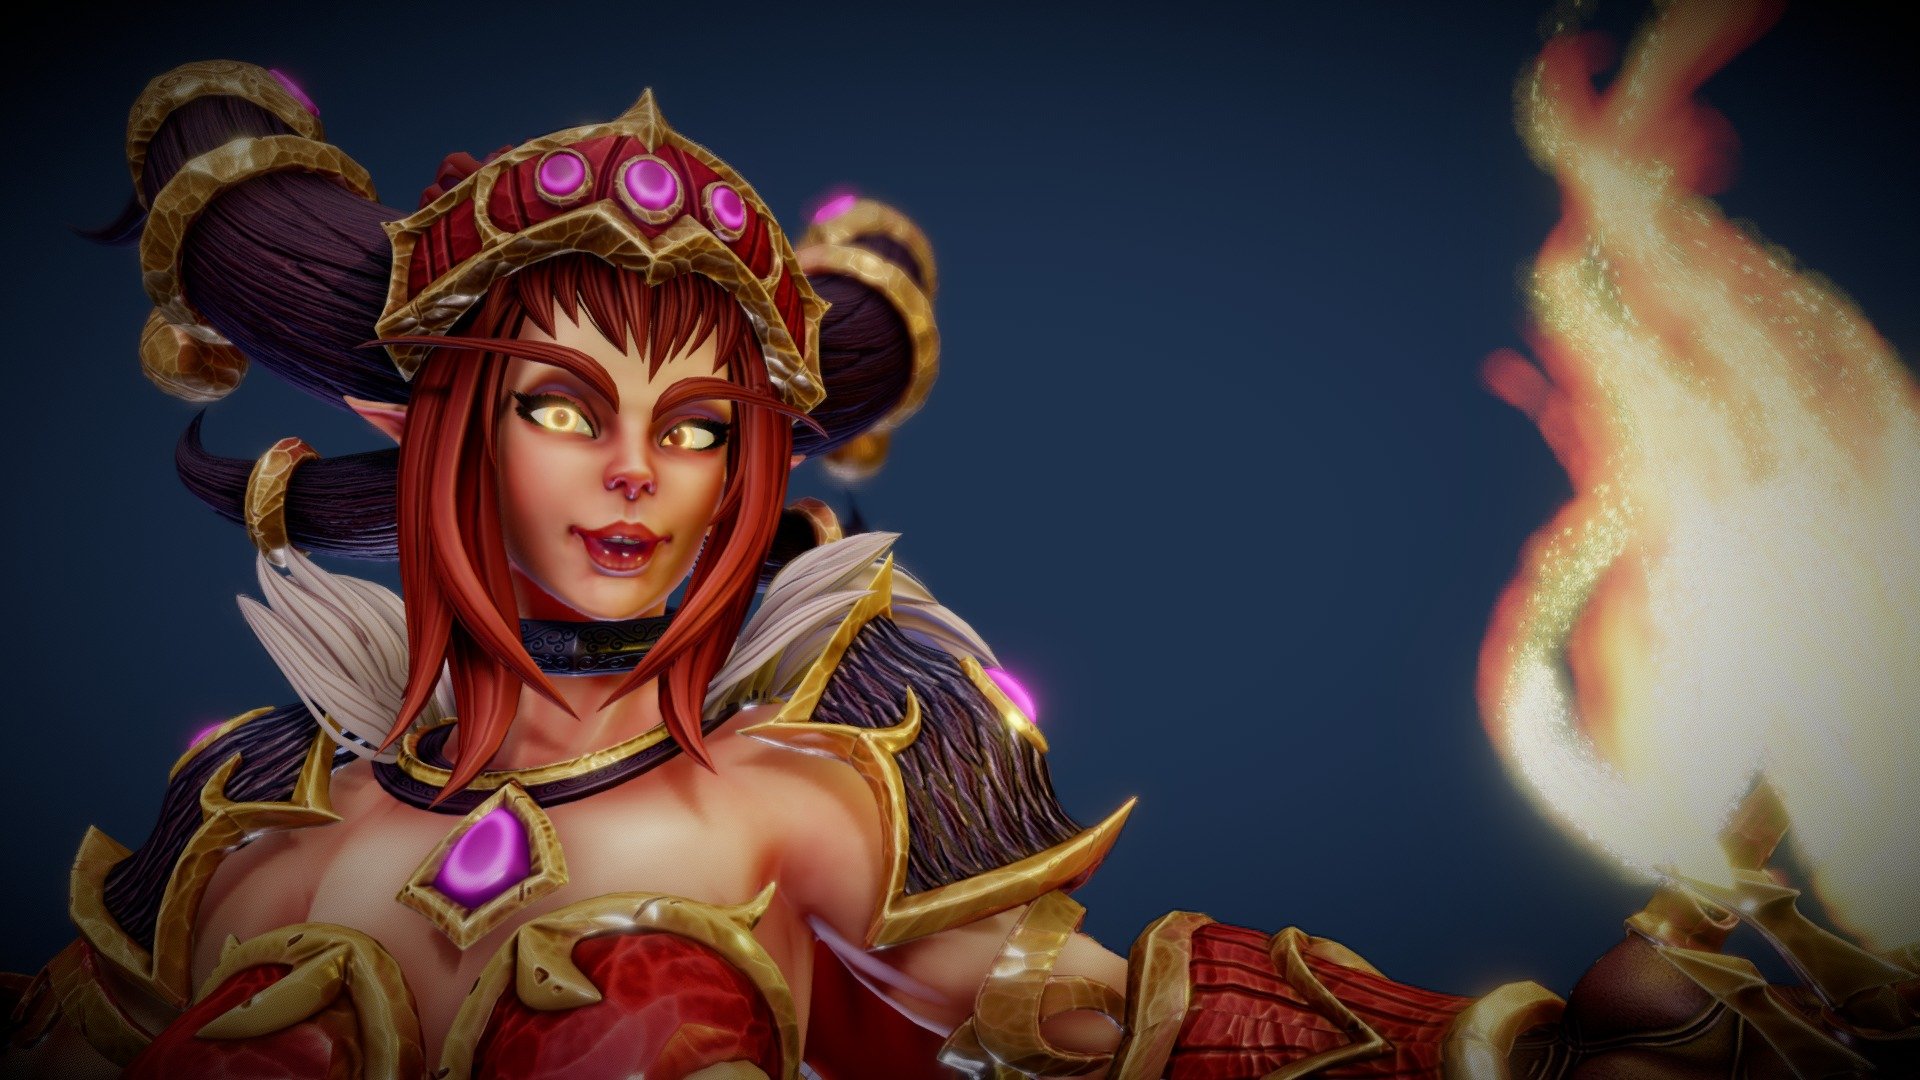 Alexstrasza From World Of Warcraft Fan Art Buy Royalty Free D Model